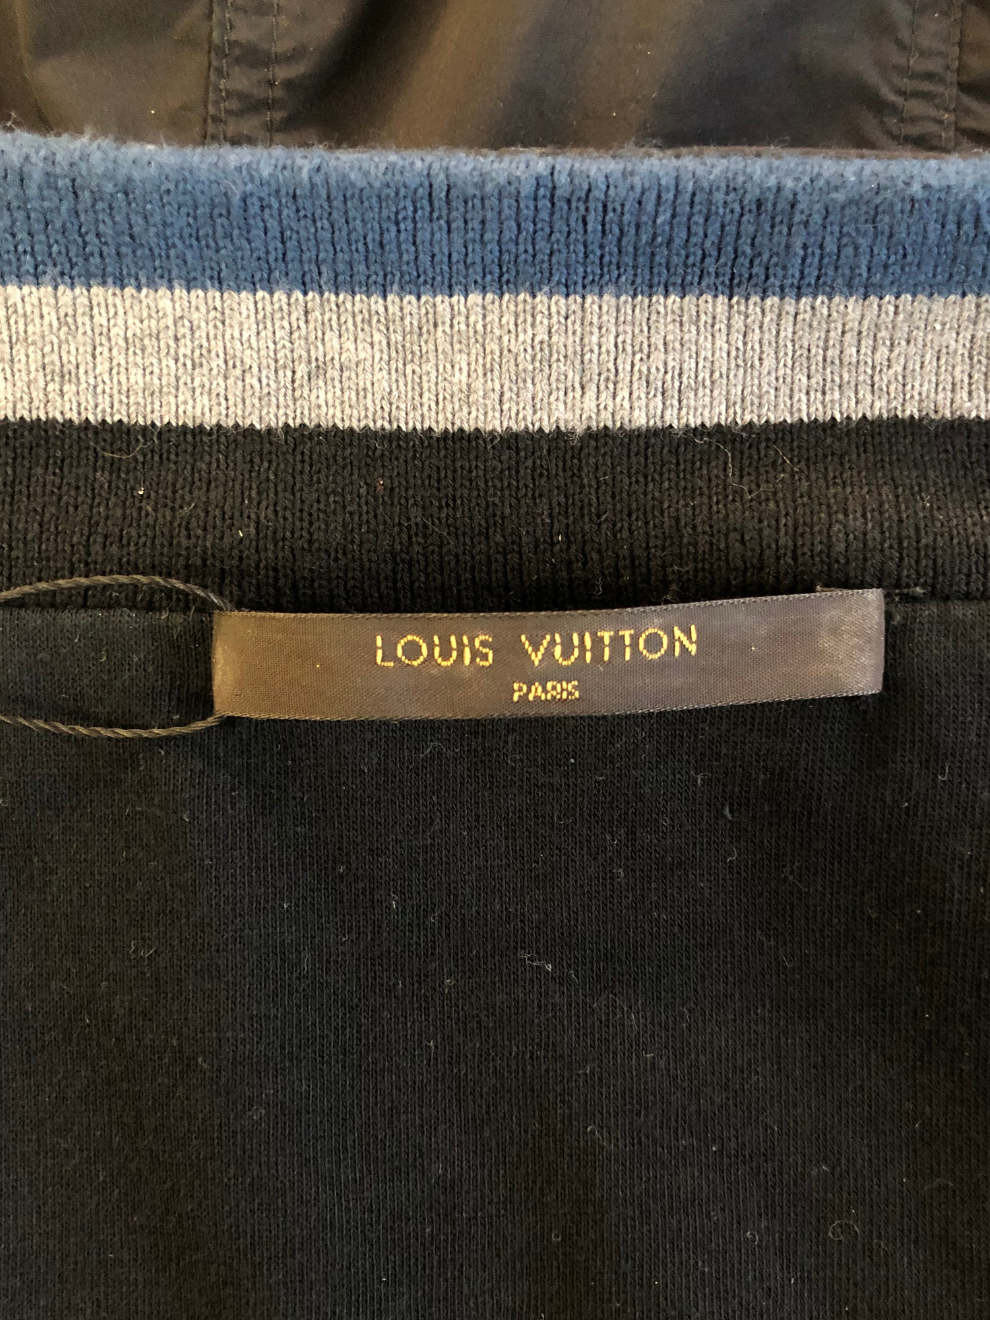 Blau-schwarzer Herren-Blouson von Louis Vuitton